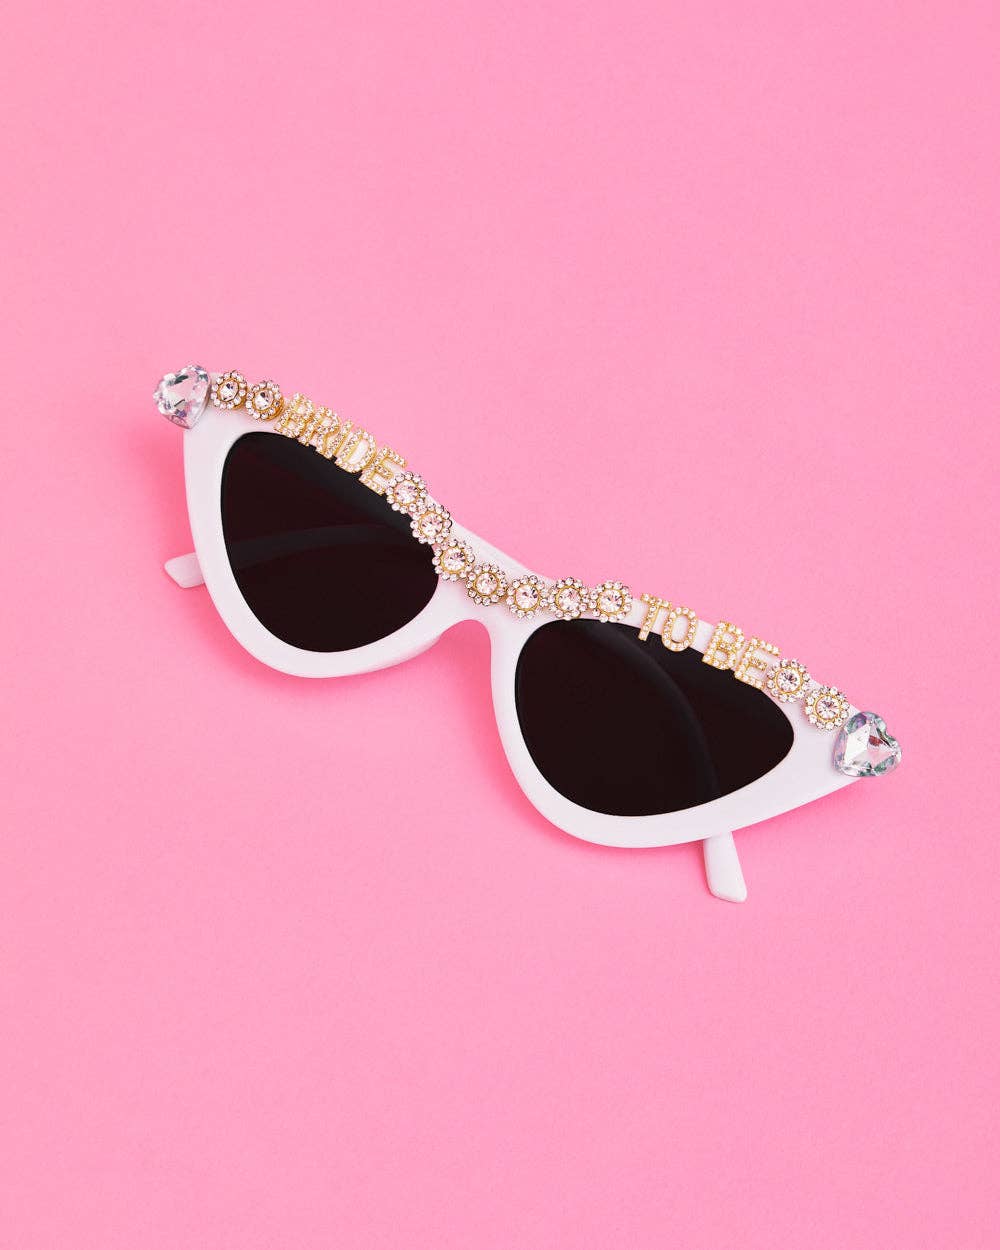 xo, Fetti - Bride Sunglasses Accessory,Bachelorette Gift, Bridal Shower